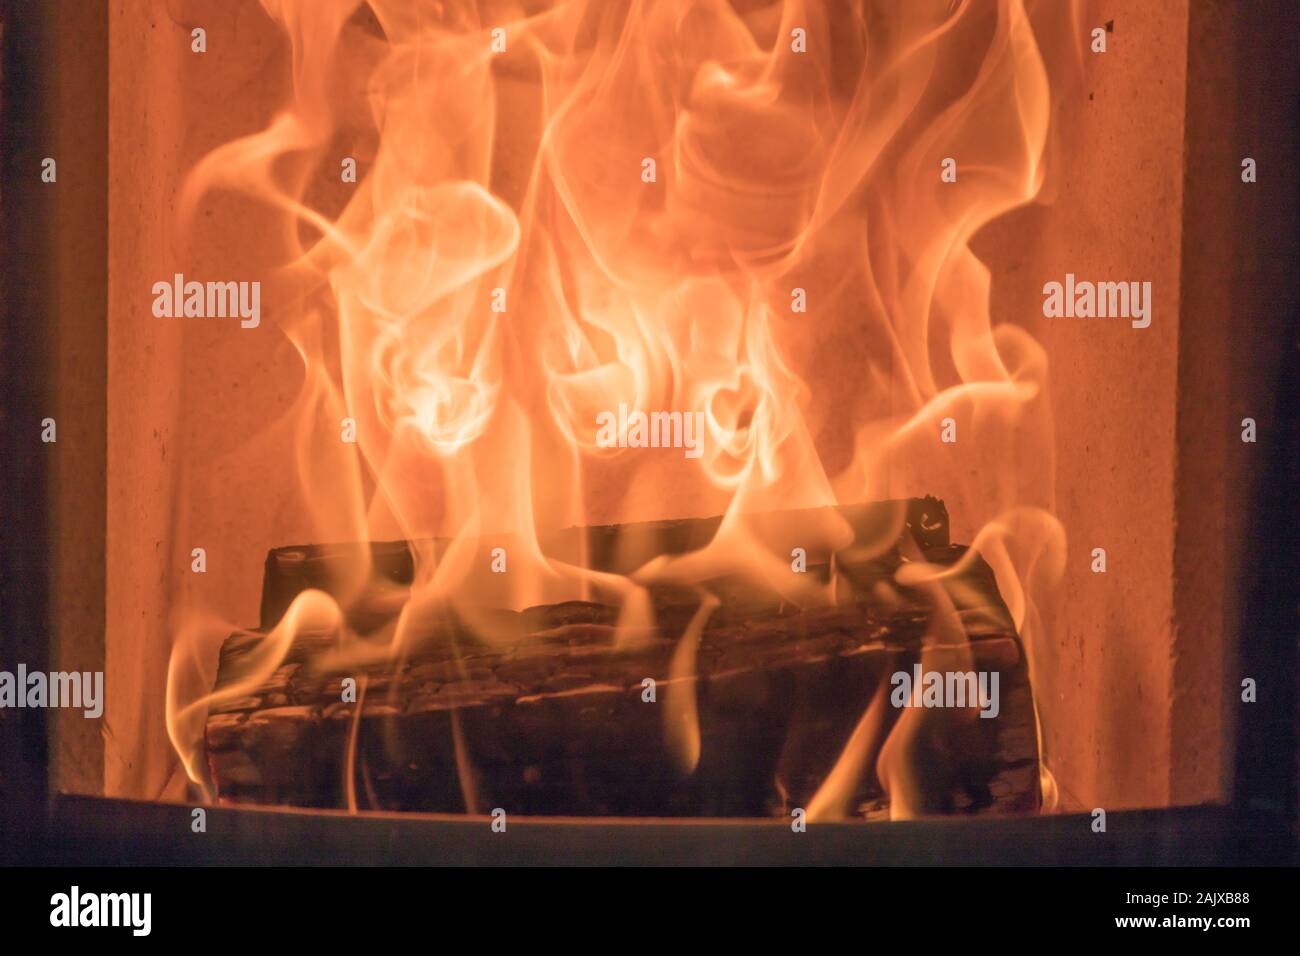 Textur der Brand in einem Holzofen Stockfoto